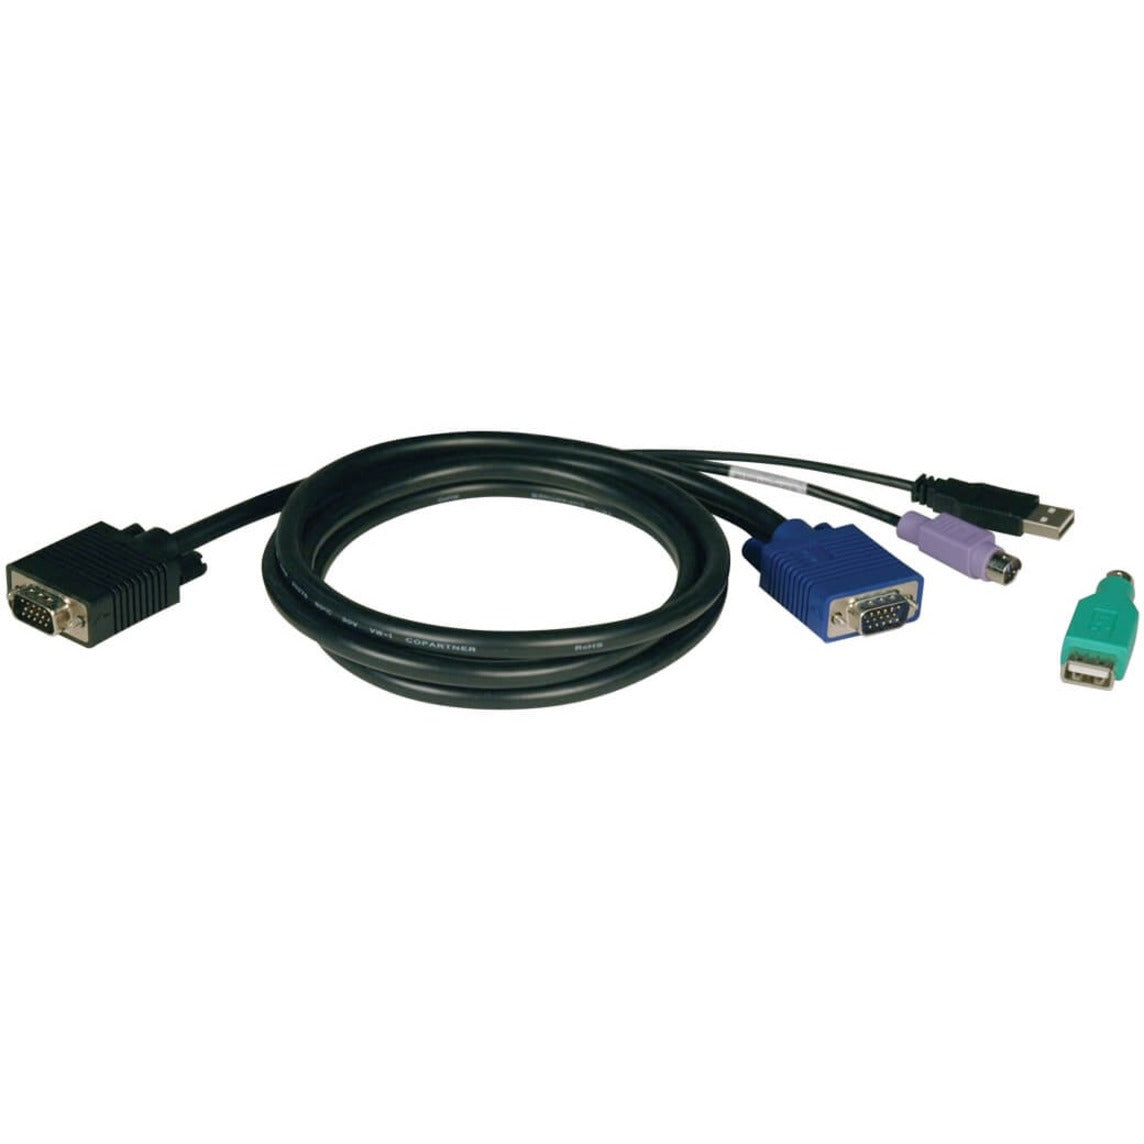 品牌名称：Tripp Lite Tripp Lite P780-006 KVM 电缆套件，适用于B042系列KVM开关，6英尺PS2 / USB